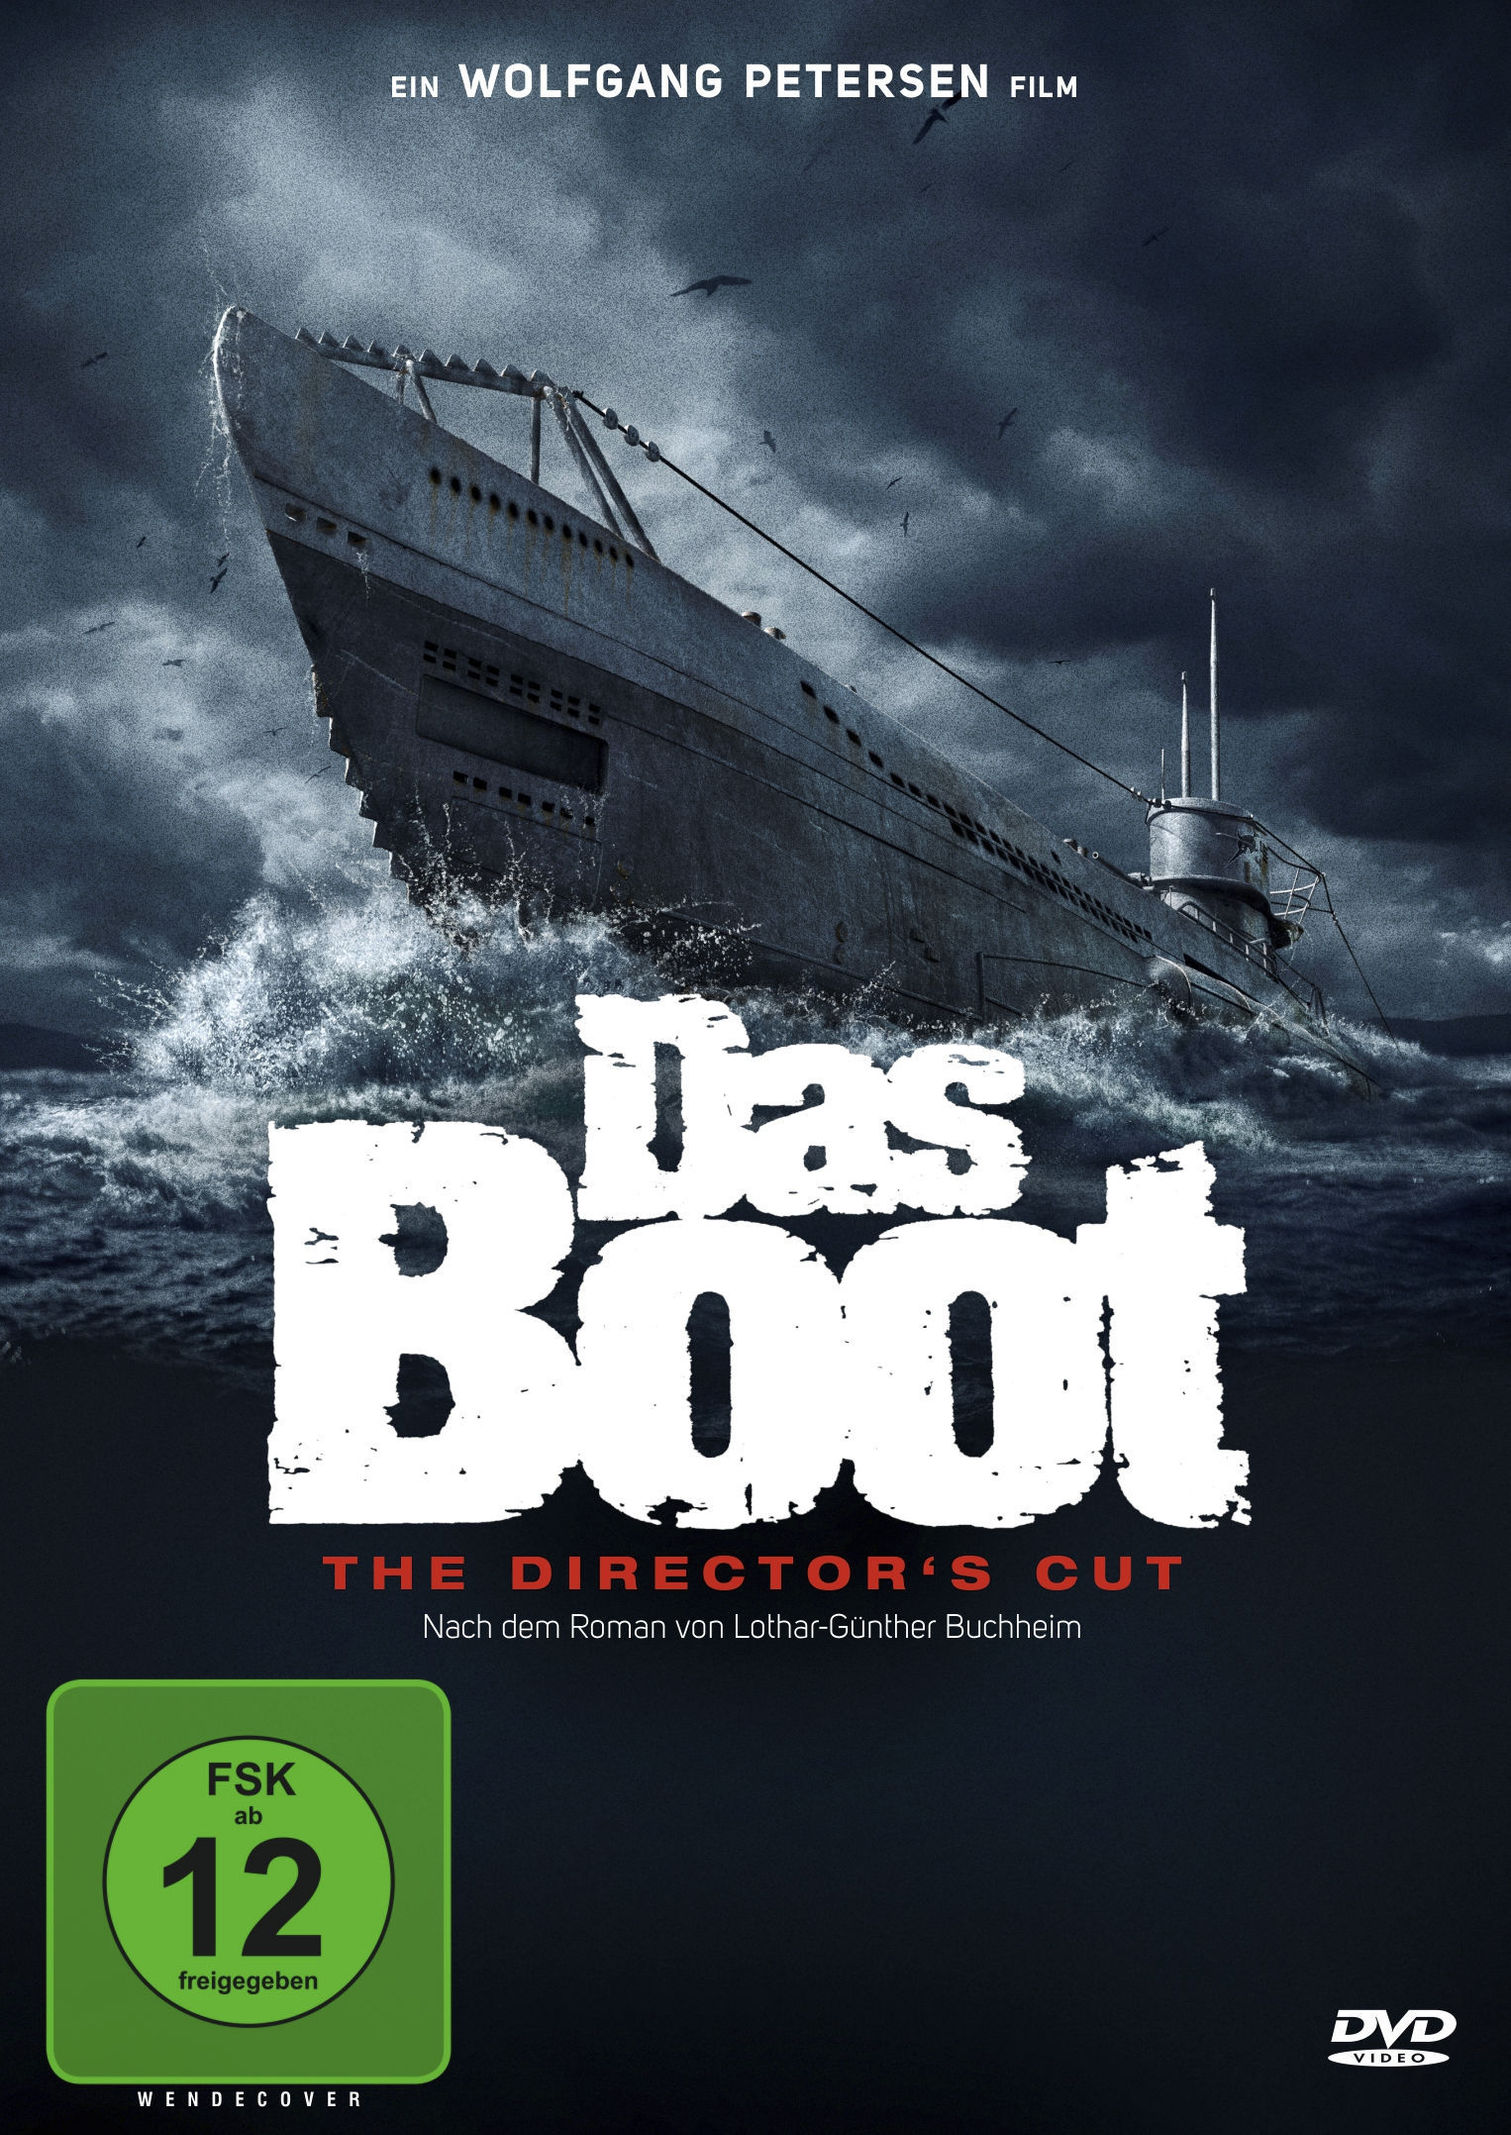 Das Boot - Director's Cut DVD bei Weltbild.at bestellen